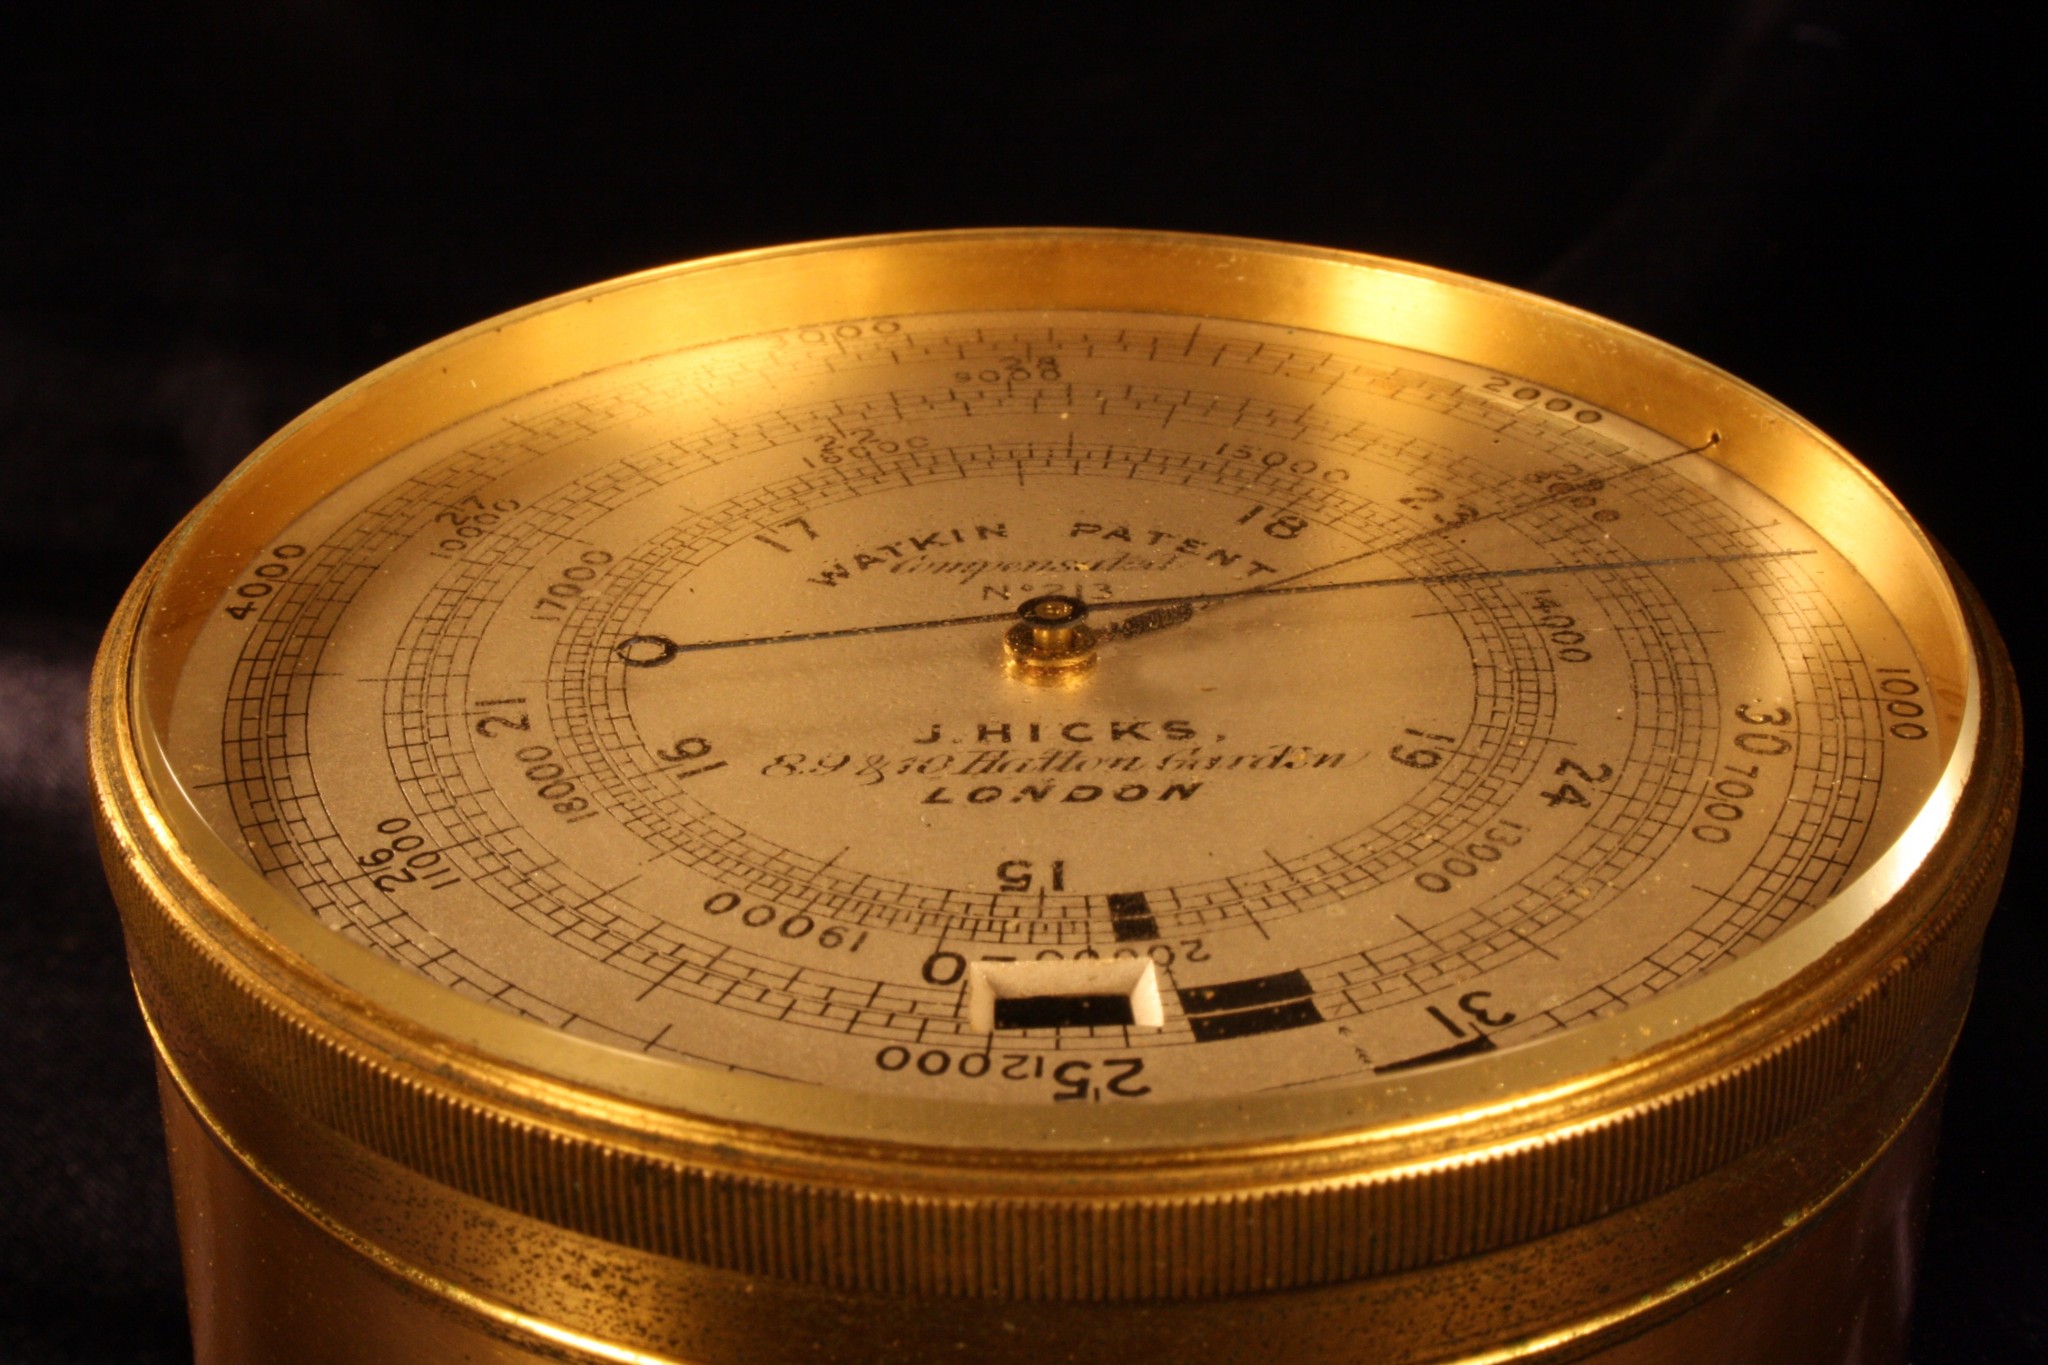 Image of Watkin Patent Altimeter No 213